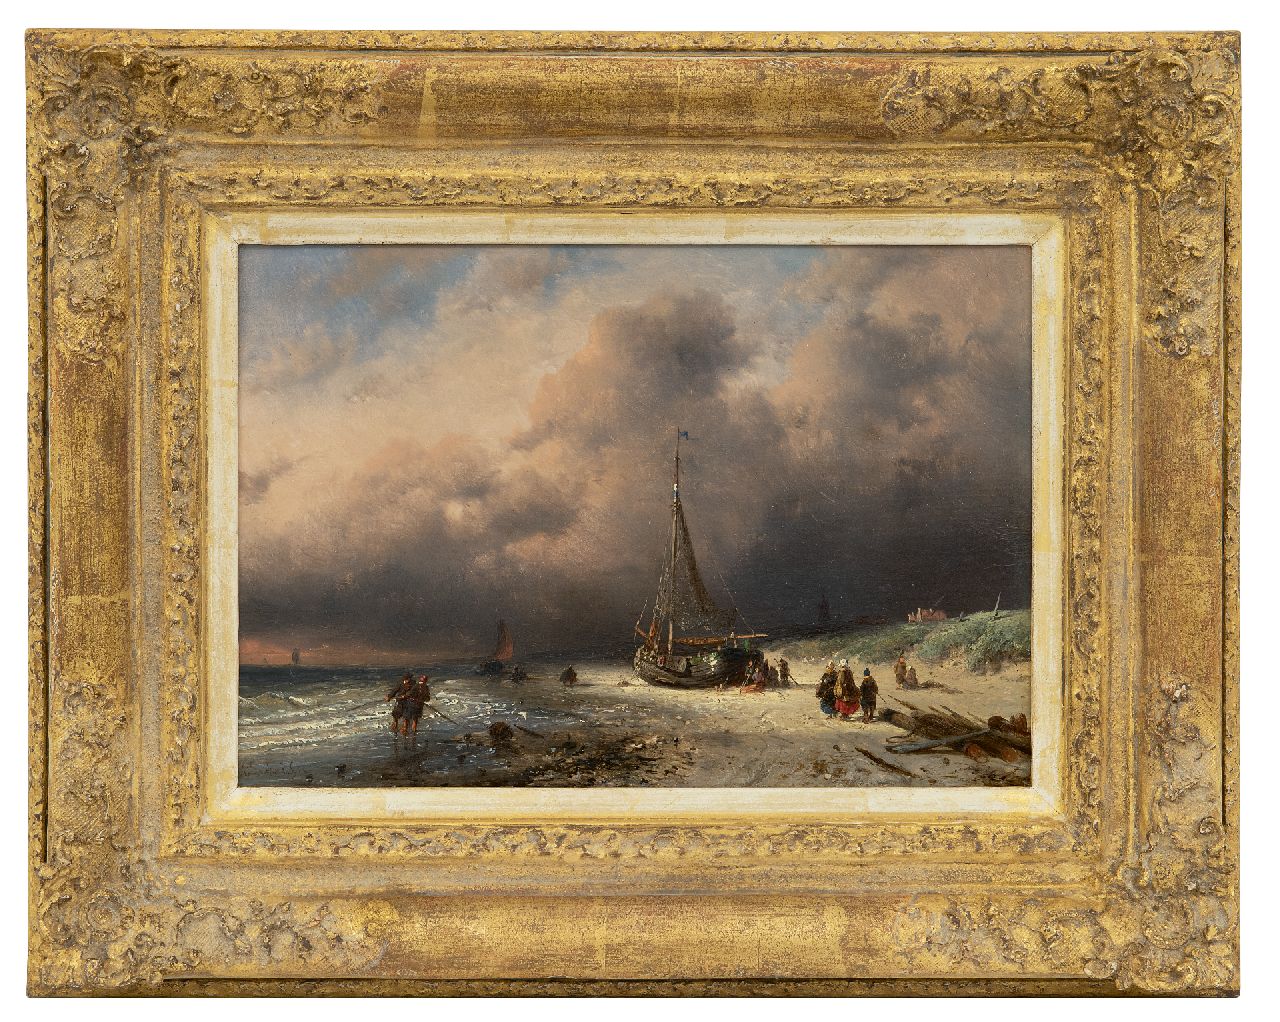 Leickert C.H.J.  | 'Charles' Henri Joseph Leickert | Schilderijen te koop aangeboden | Het binnenhalen van de vangst, olieverf op paneel 17,5 x 25,4 cm, gesigneerd linksonder en gedateerd '50